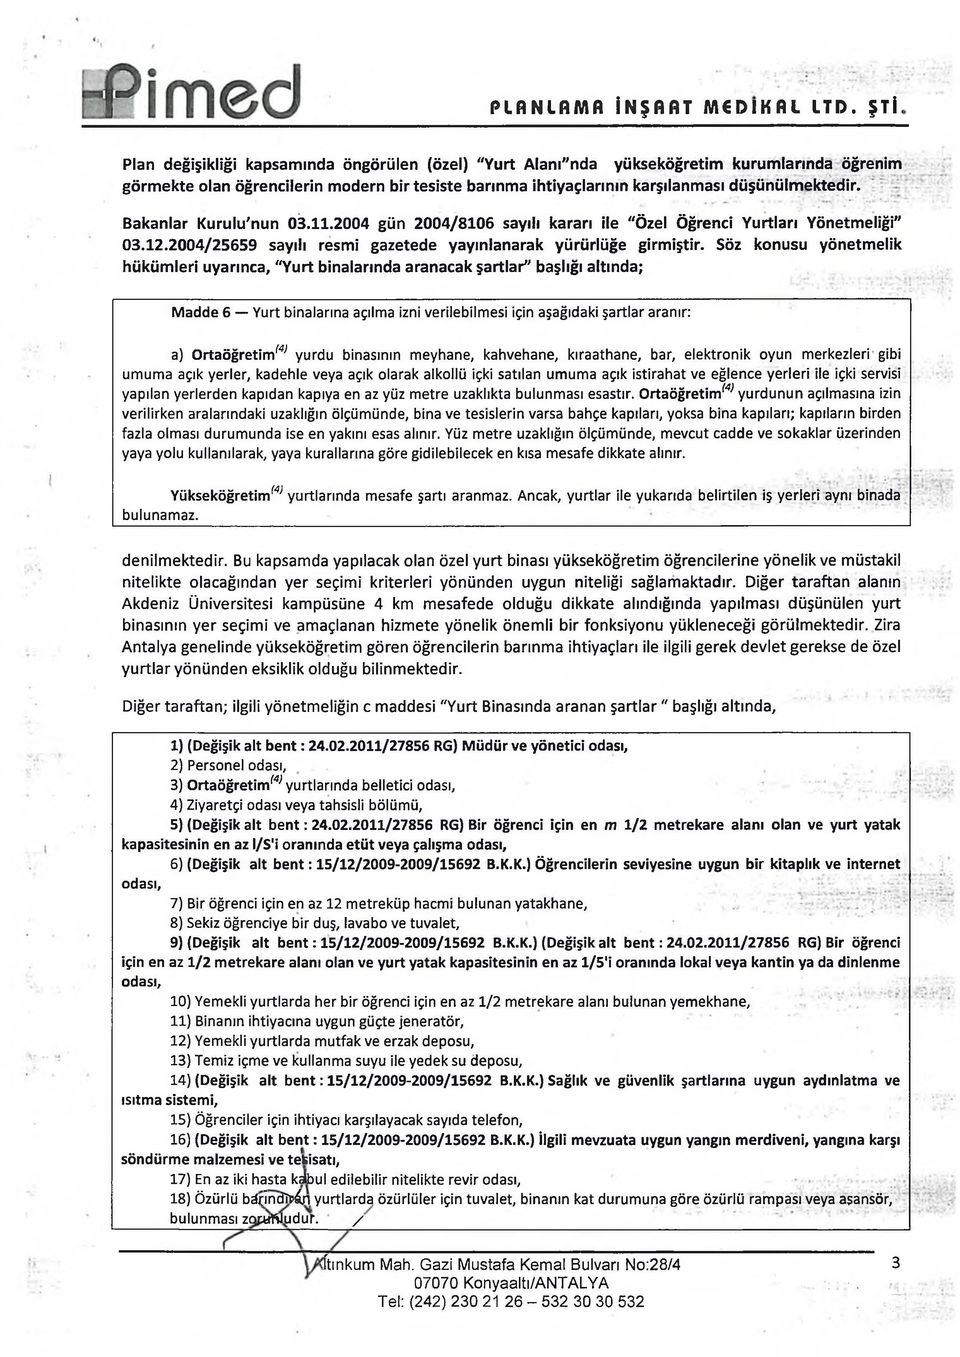 Bakanlar Kurulu'nun 03.11.2004 gün 2004/8106 sayılı kararı ile "Özel Öğrenci Yurtları Yönetmeliği" 03.12.2004/25659 sayılı resmi gazetede yayınlanarak yürürlüğe girmiştir.